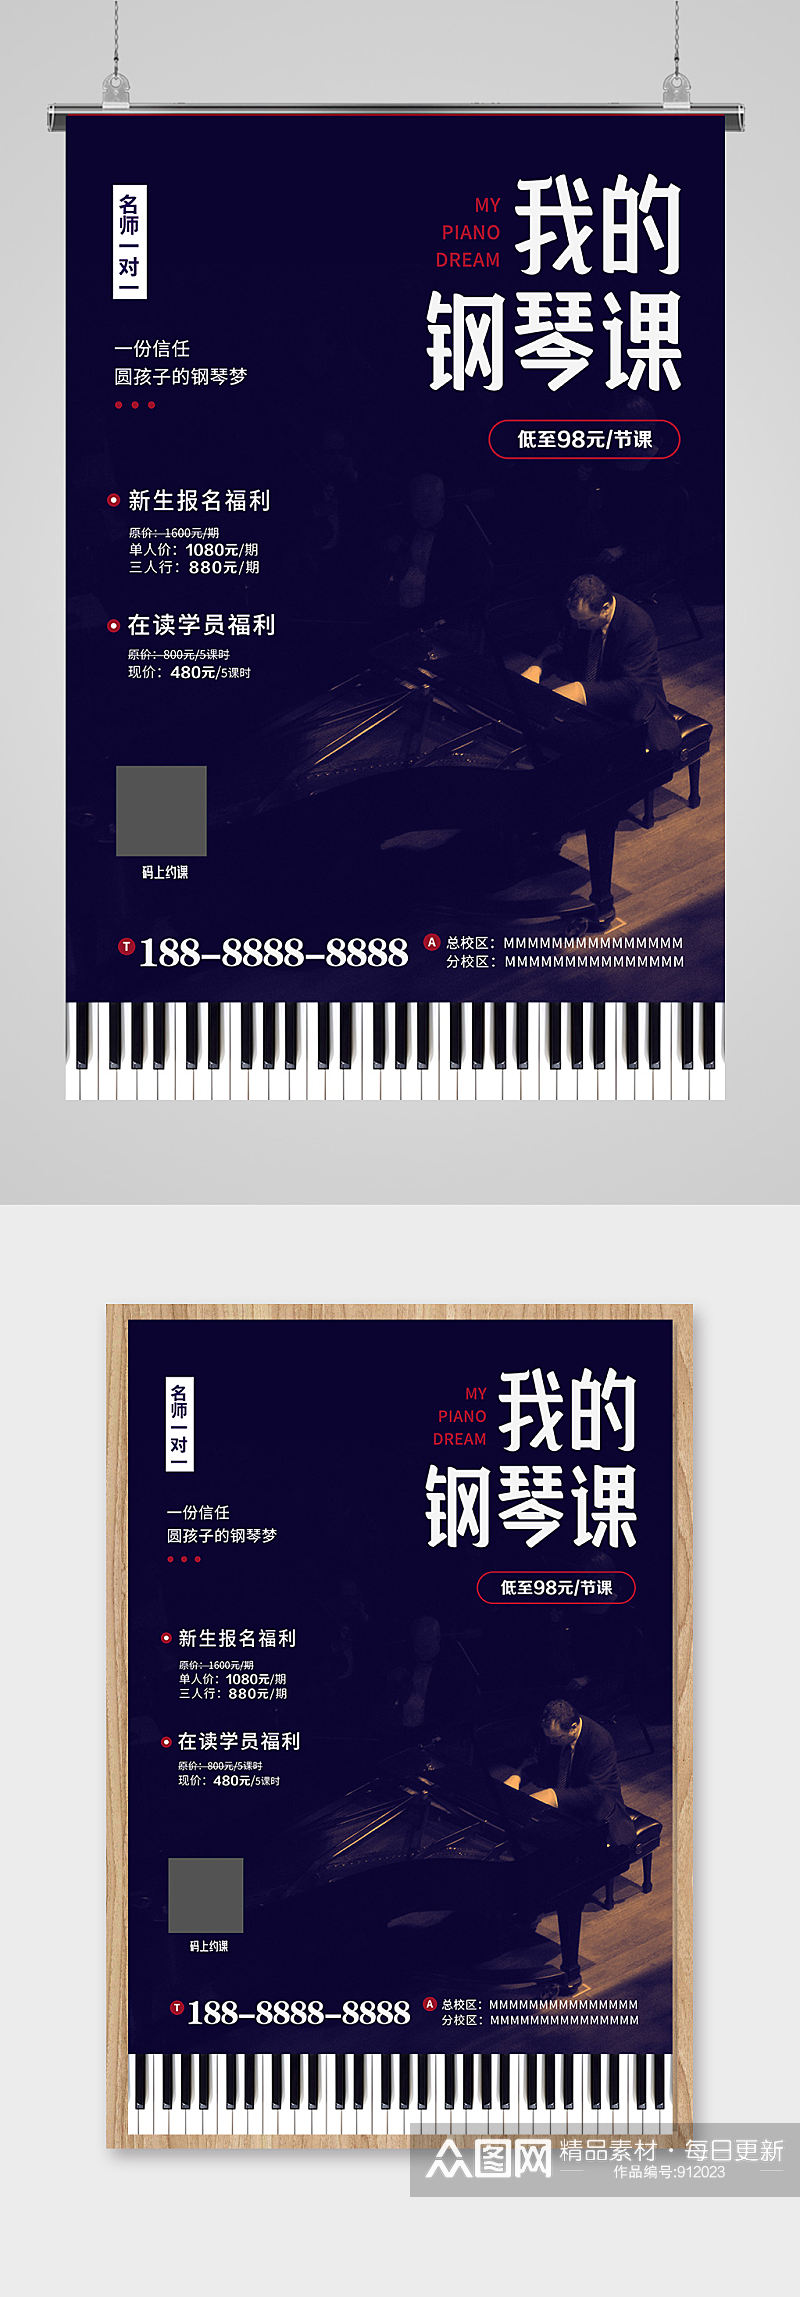 我的钢琴课艺术辅导班钢琴培训班招生海报素材